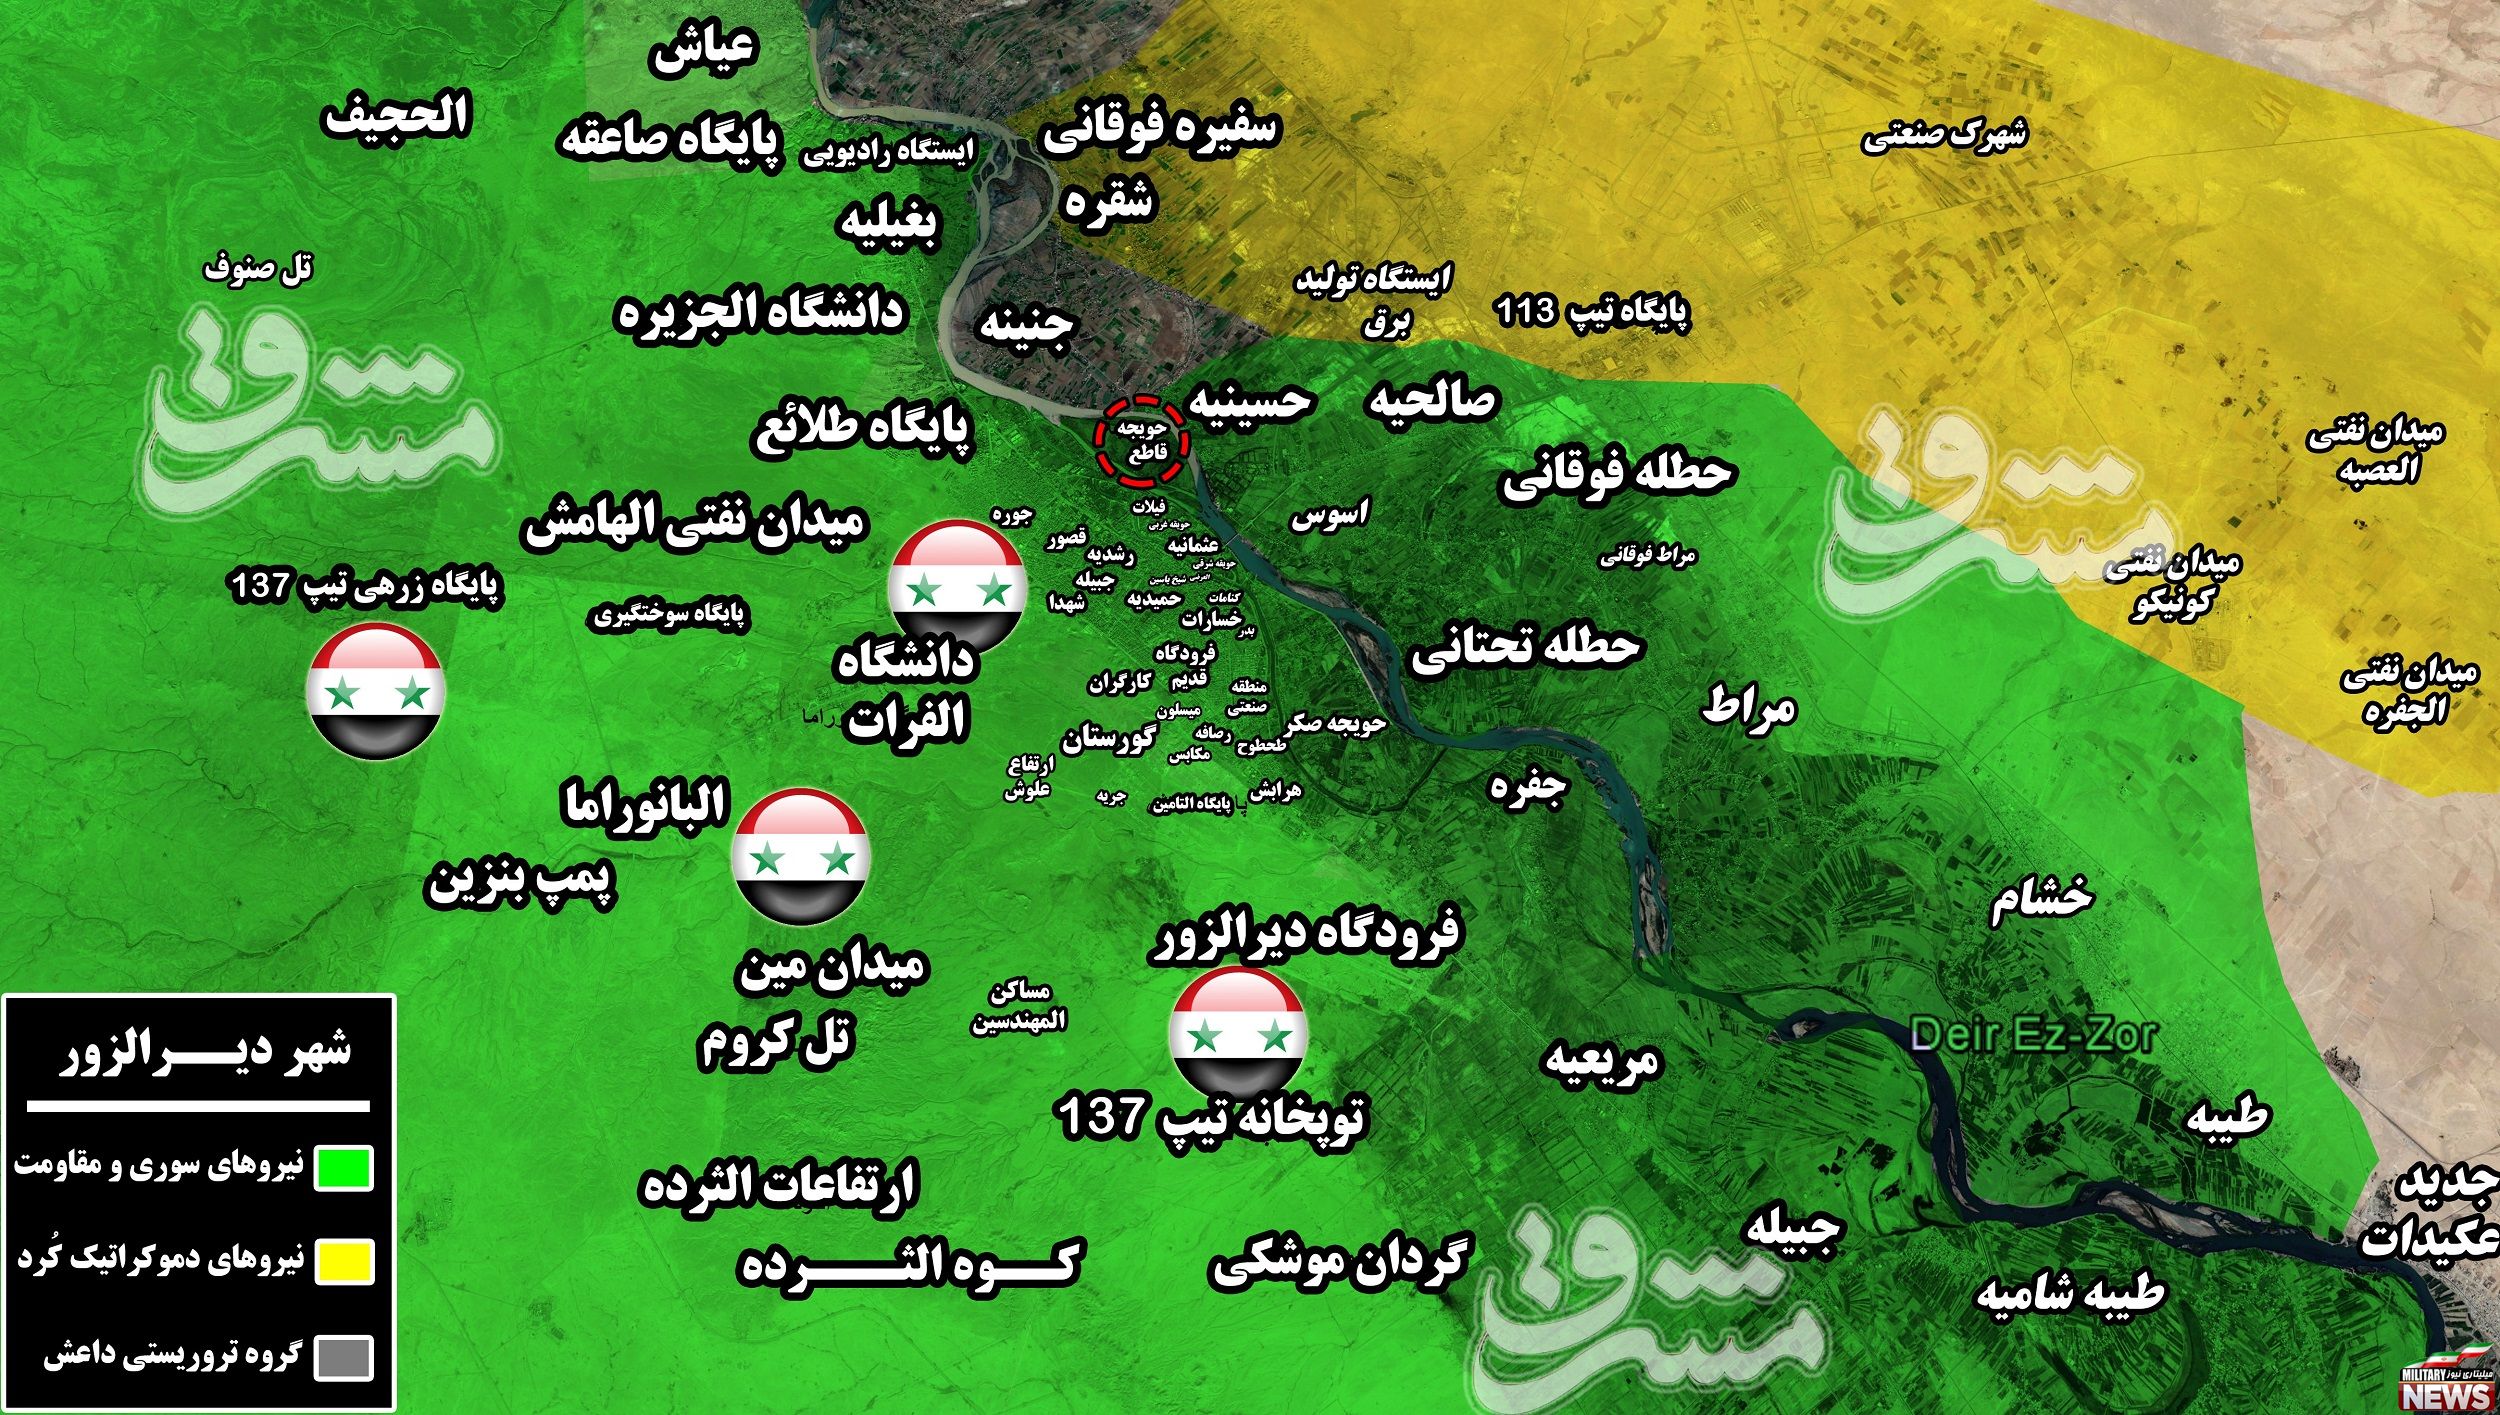 2099929 - آخرین پایگاه داعش در حومه شهر دیرالزور هم آزاد شد + نقشه میدانی